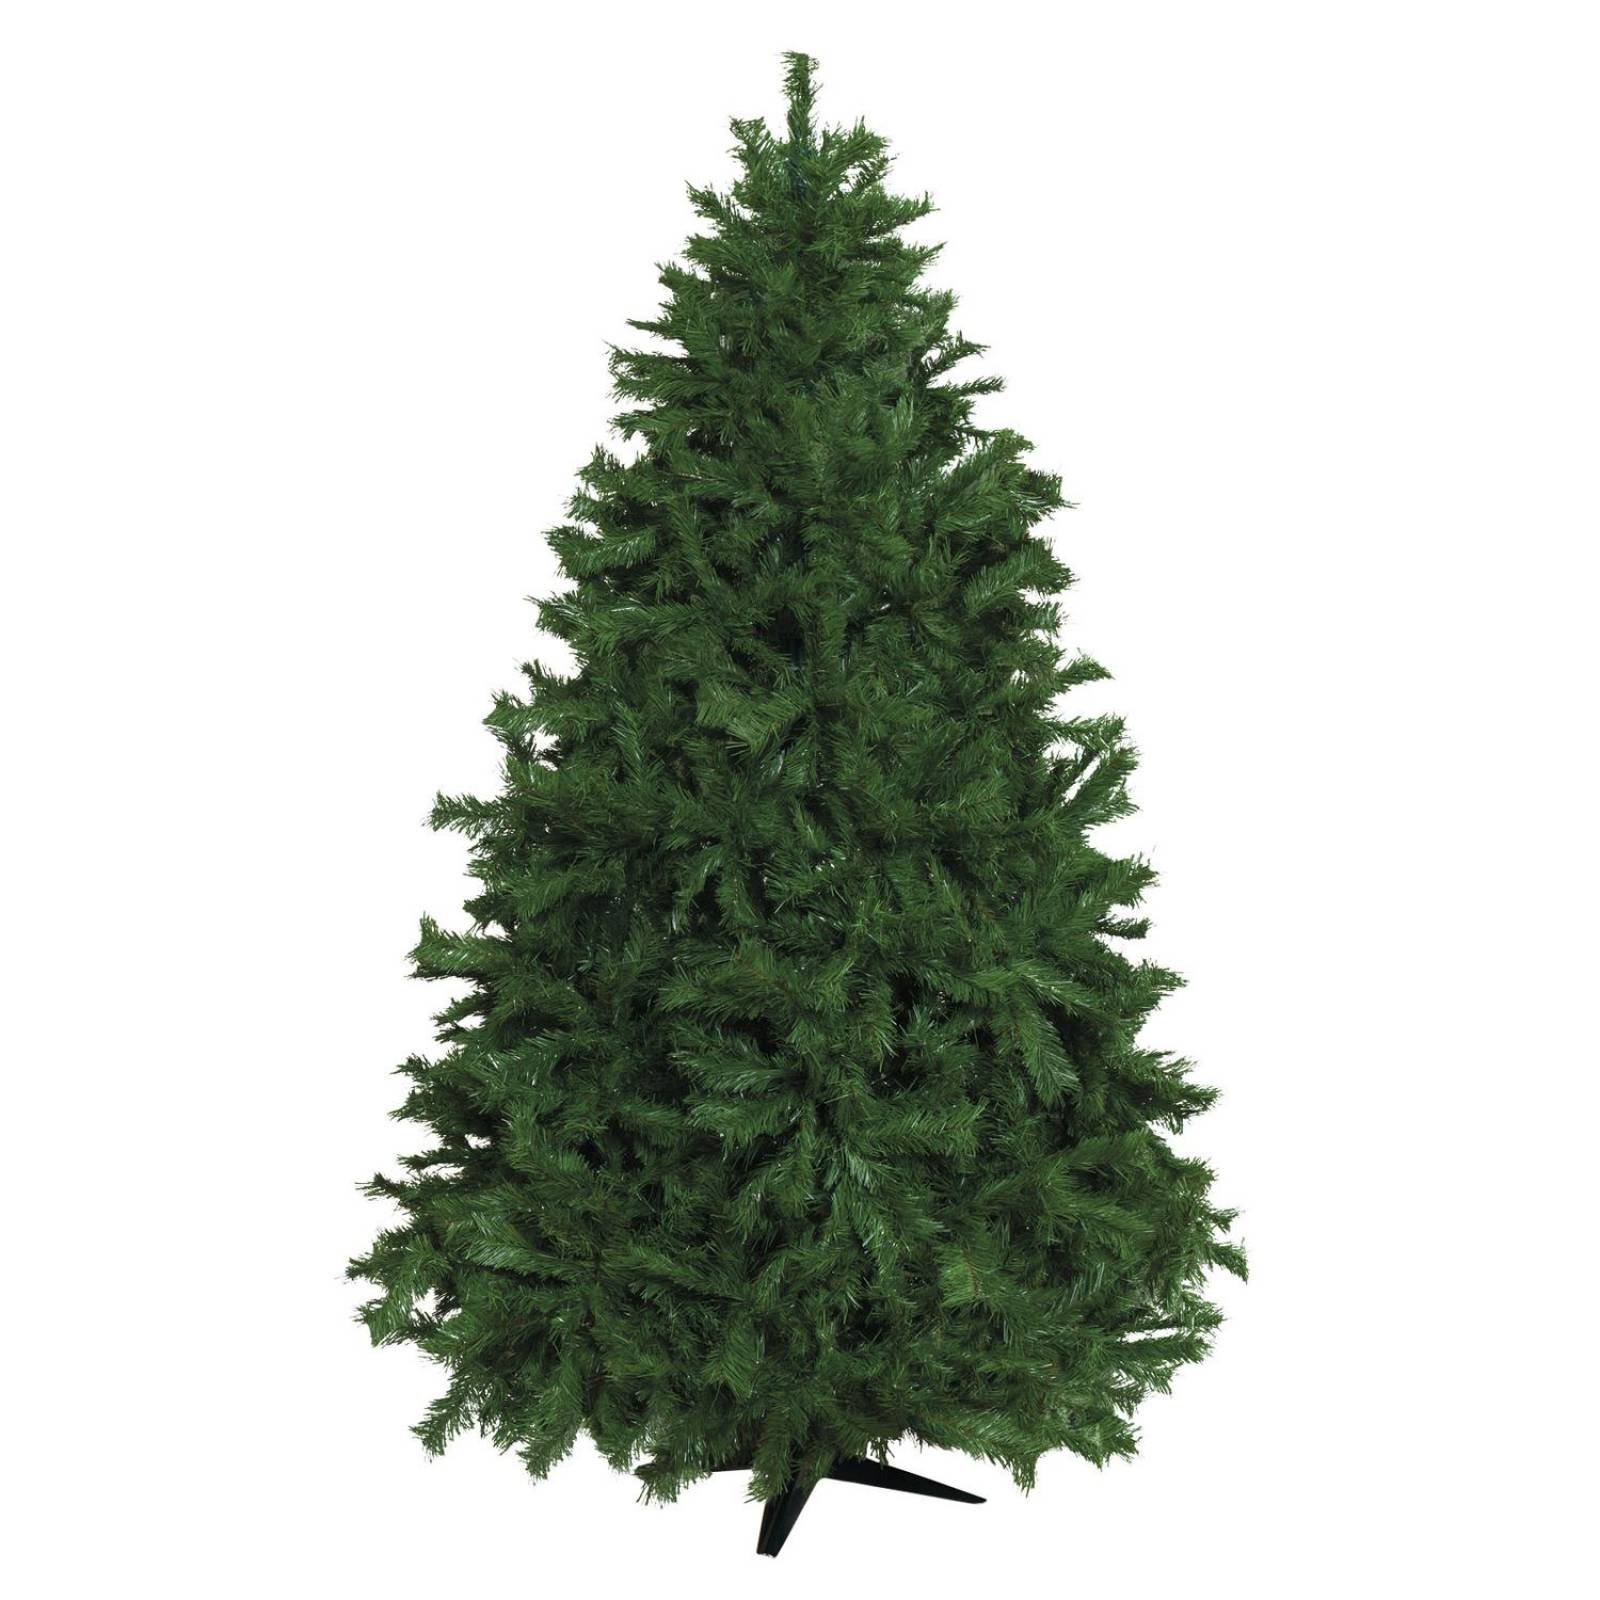 Árbol de Navidad Robusto Verde 1.80cm envuelto PVC 7.6cm*0.12mm Verde oscuro